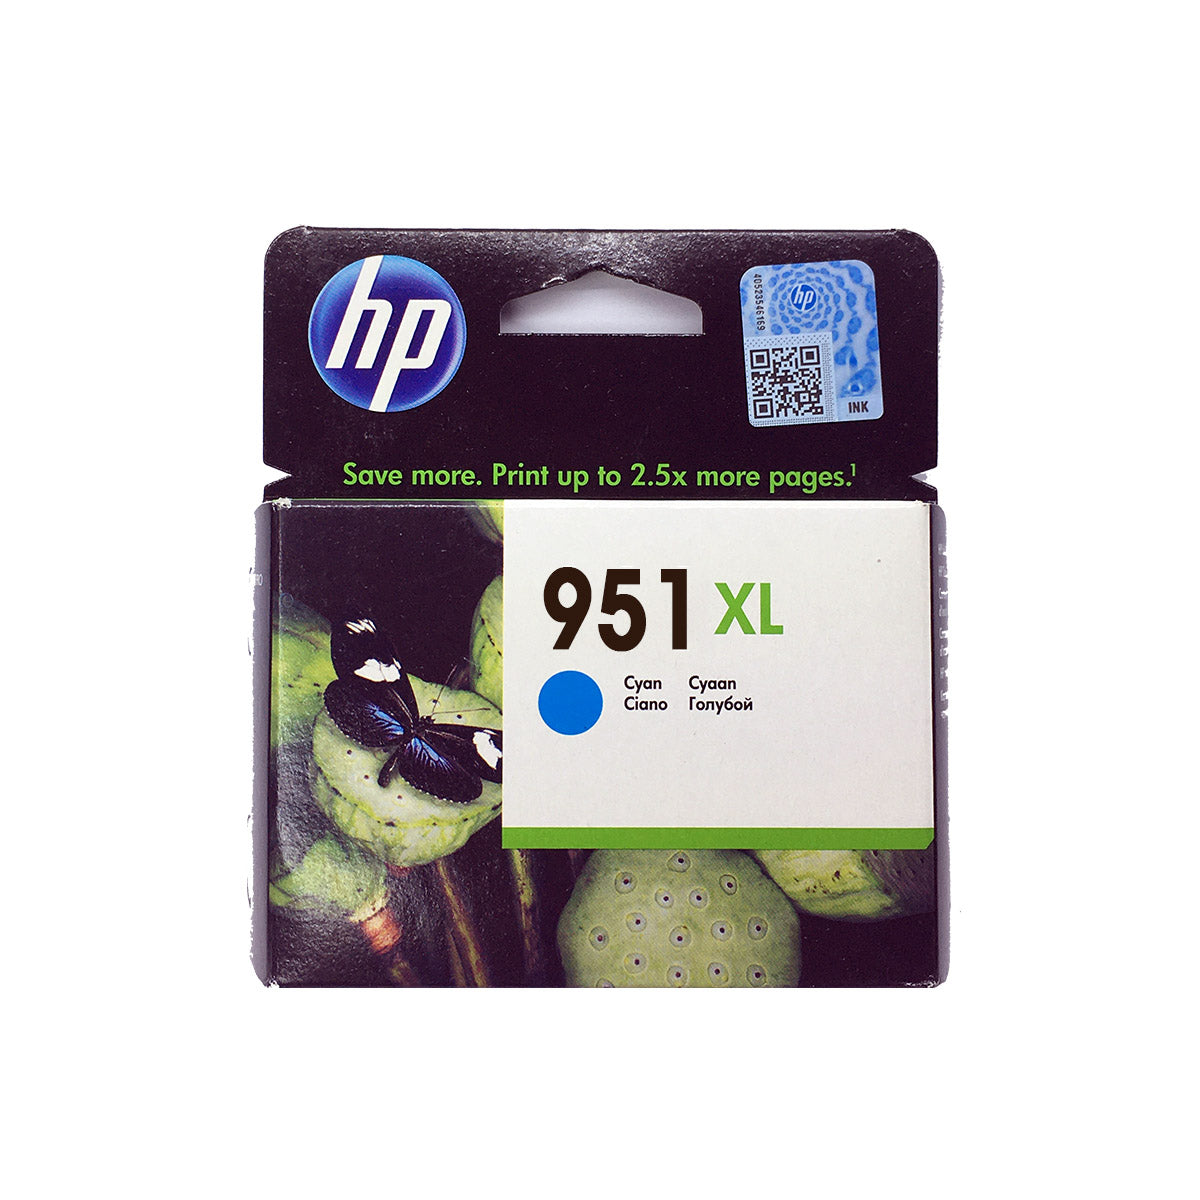 Shop HP 951XL Original Ink Cartridge Cyan Color online in Abu Dhabi, UAE